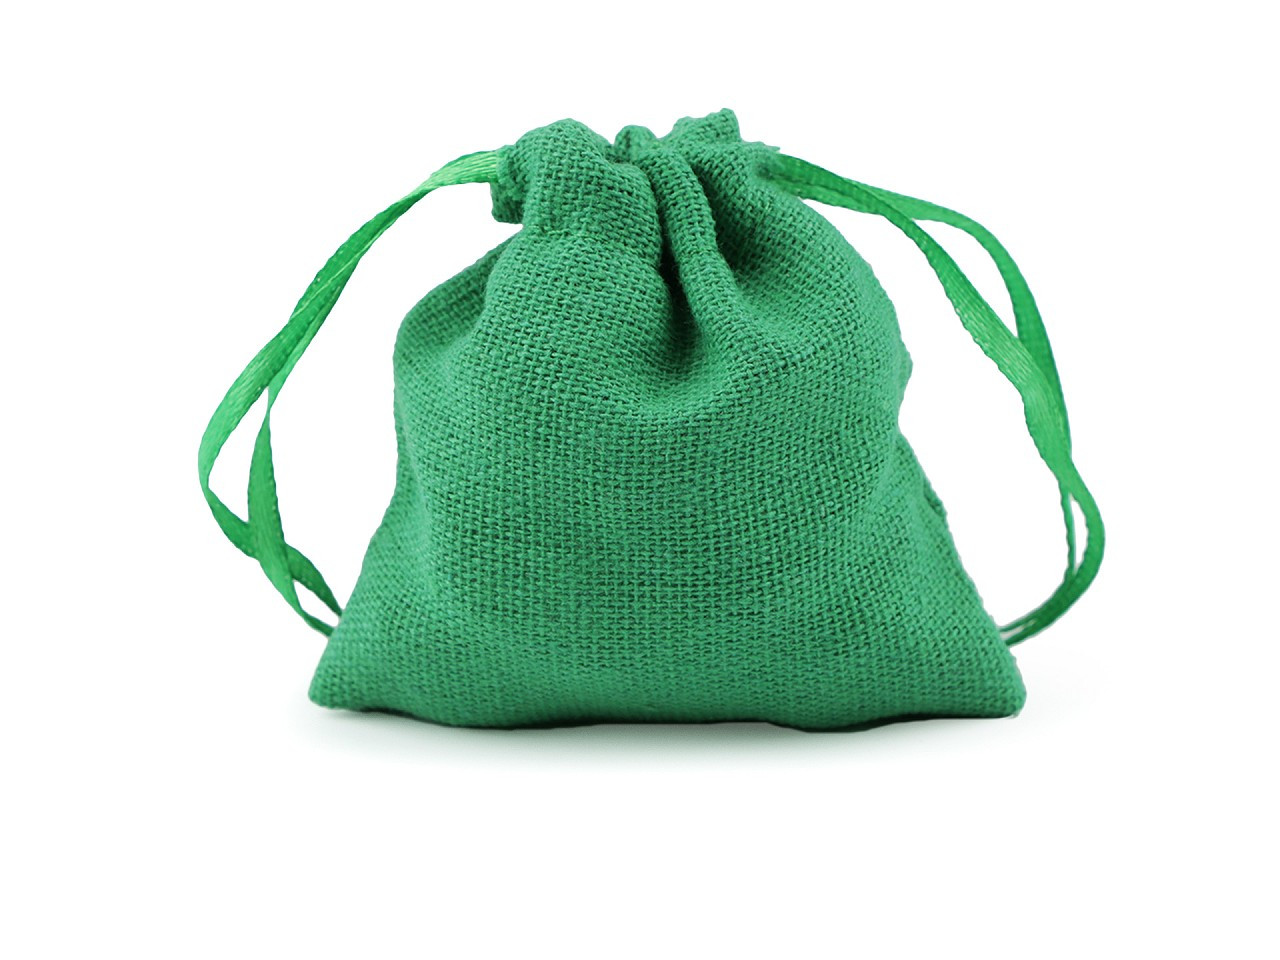 Dárkový pytlík 8x8 cm textilní, barva 6 zelená